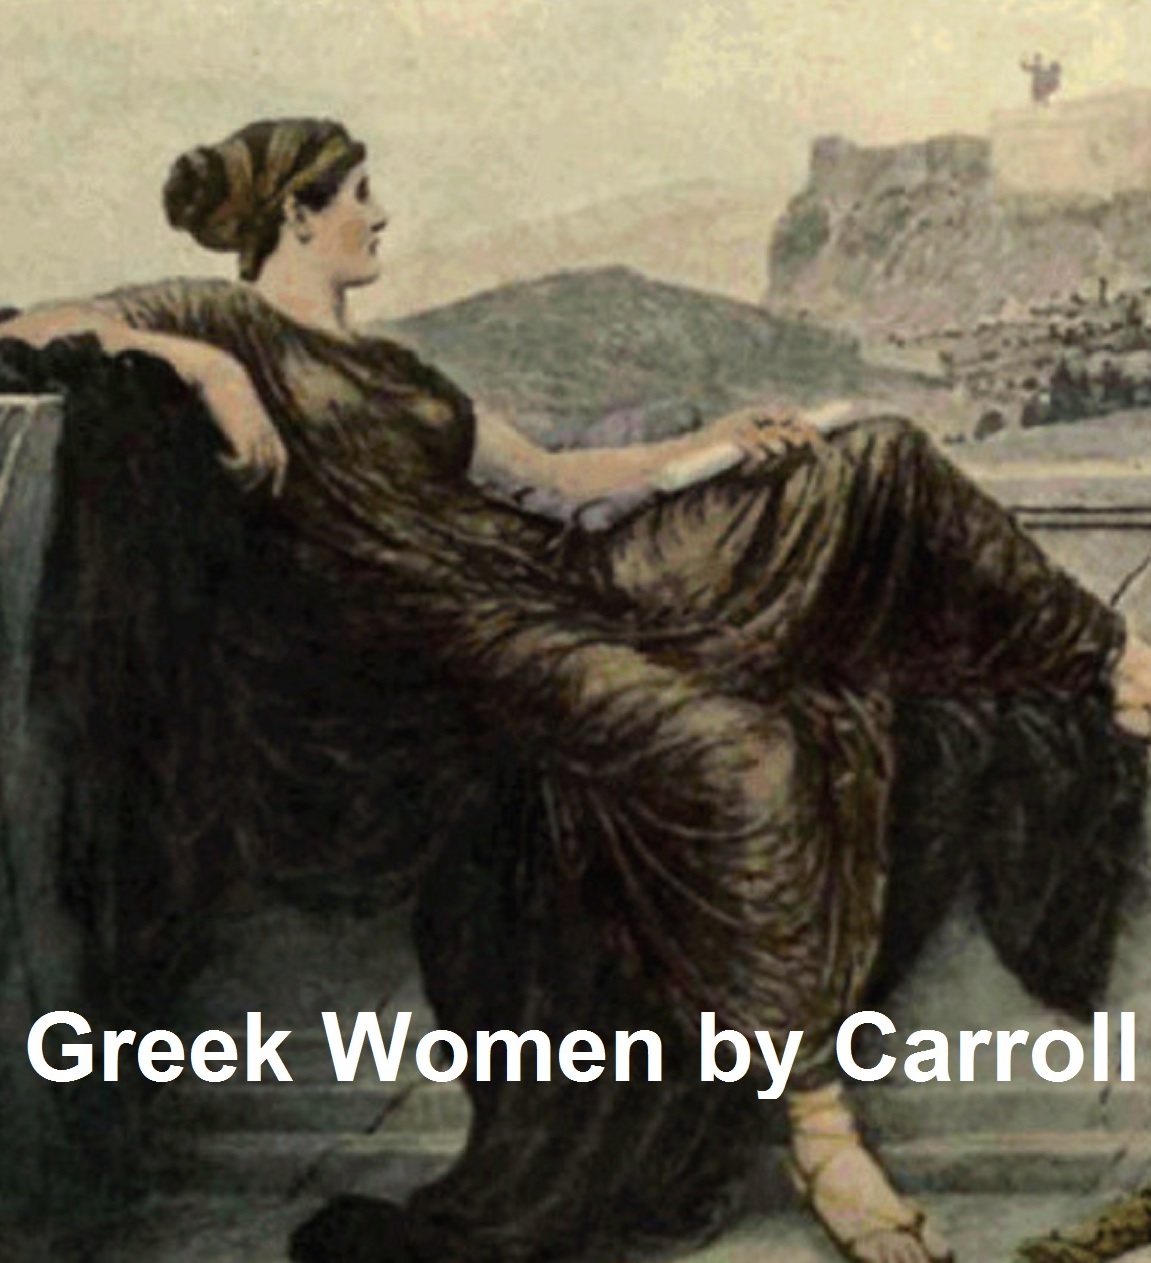 Greek Women